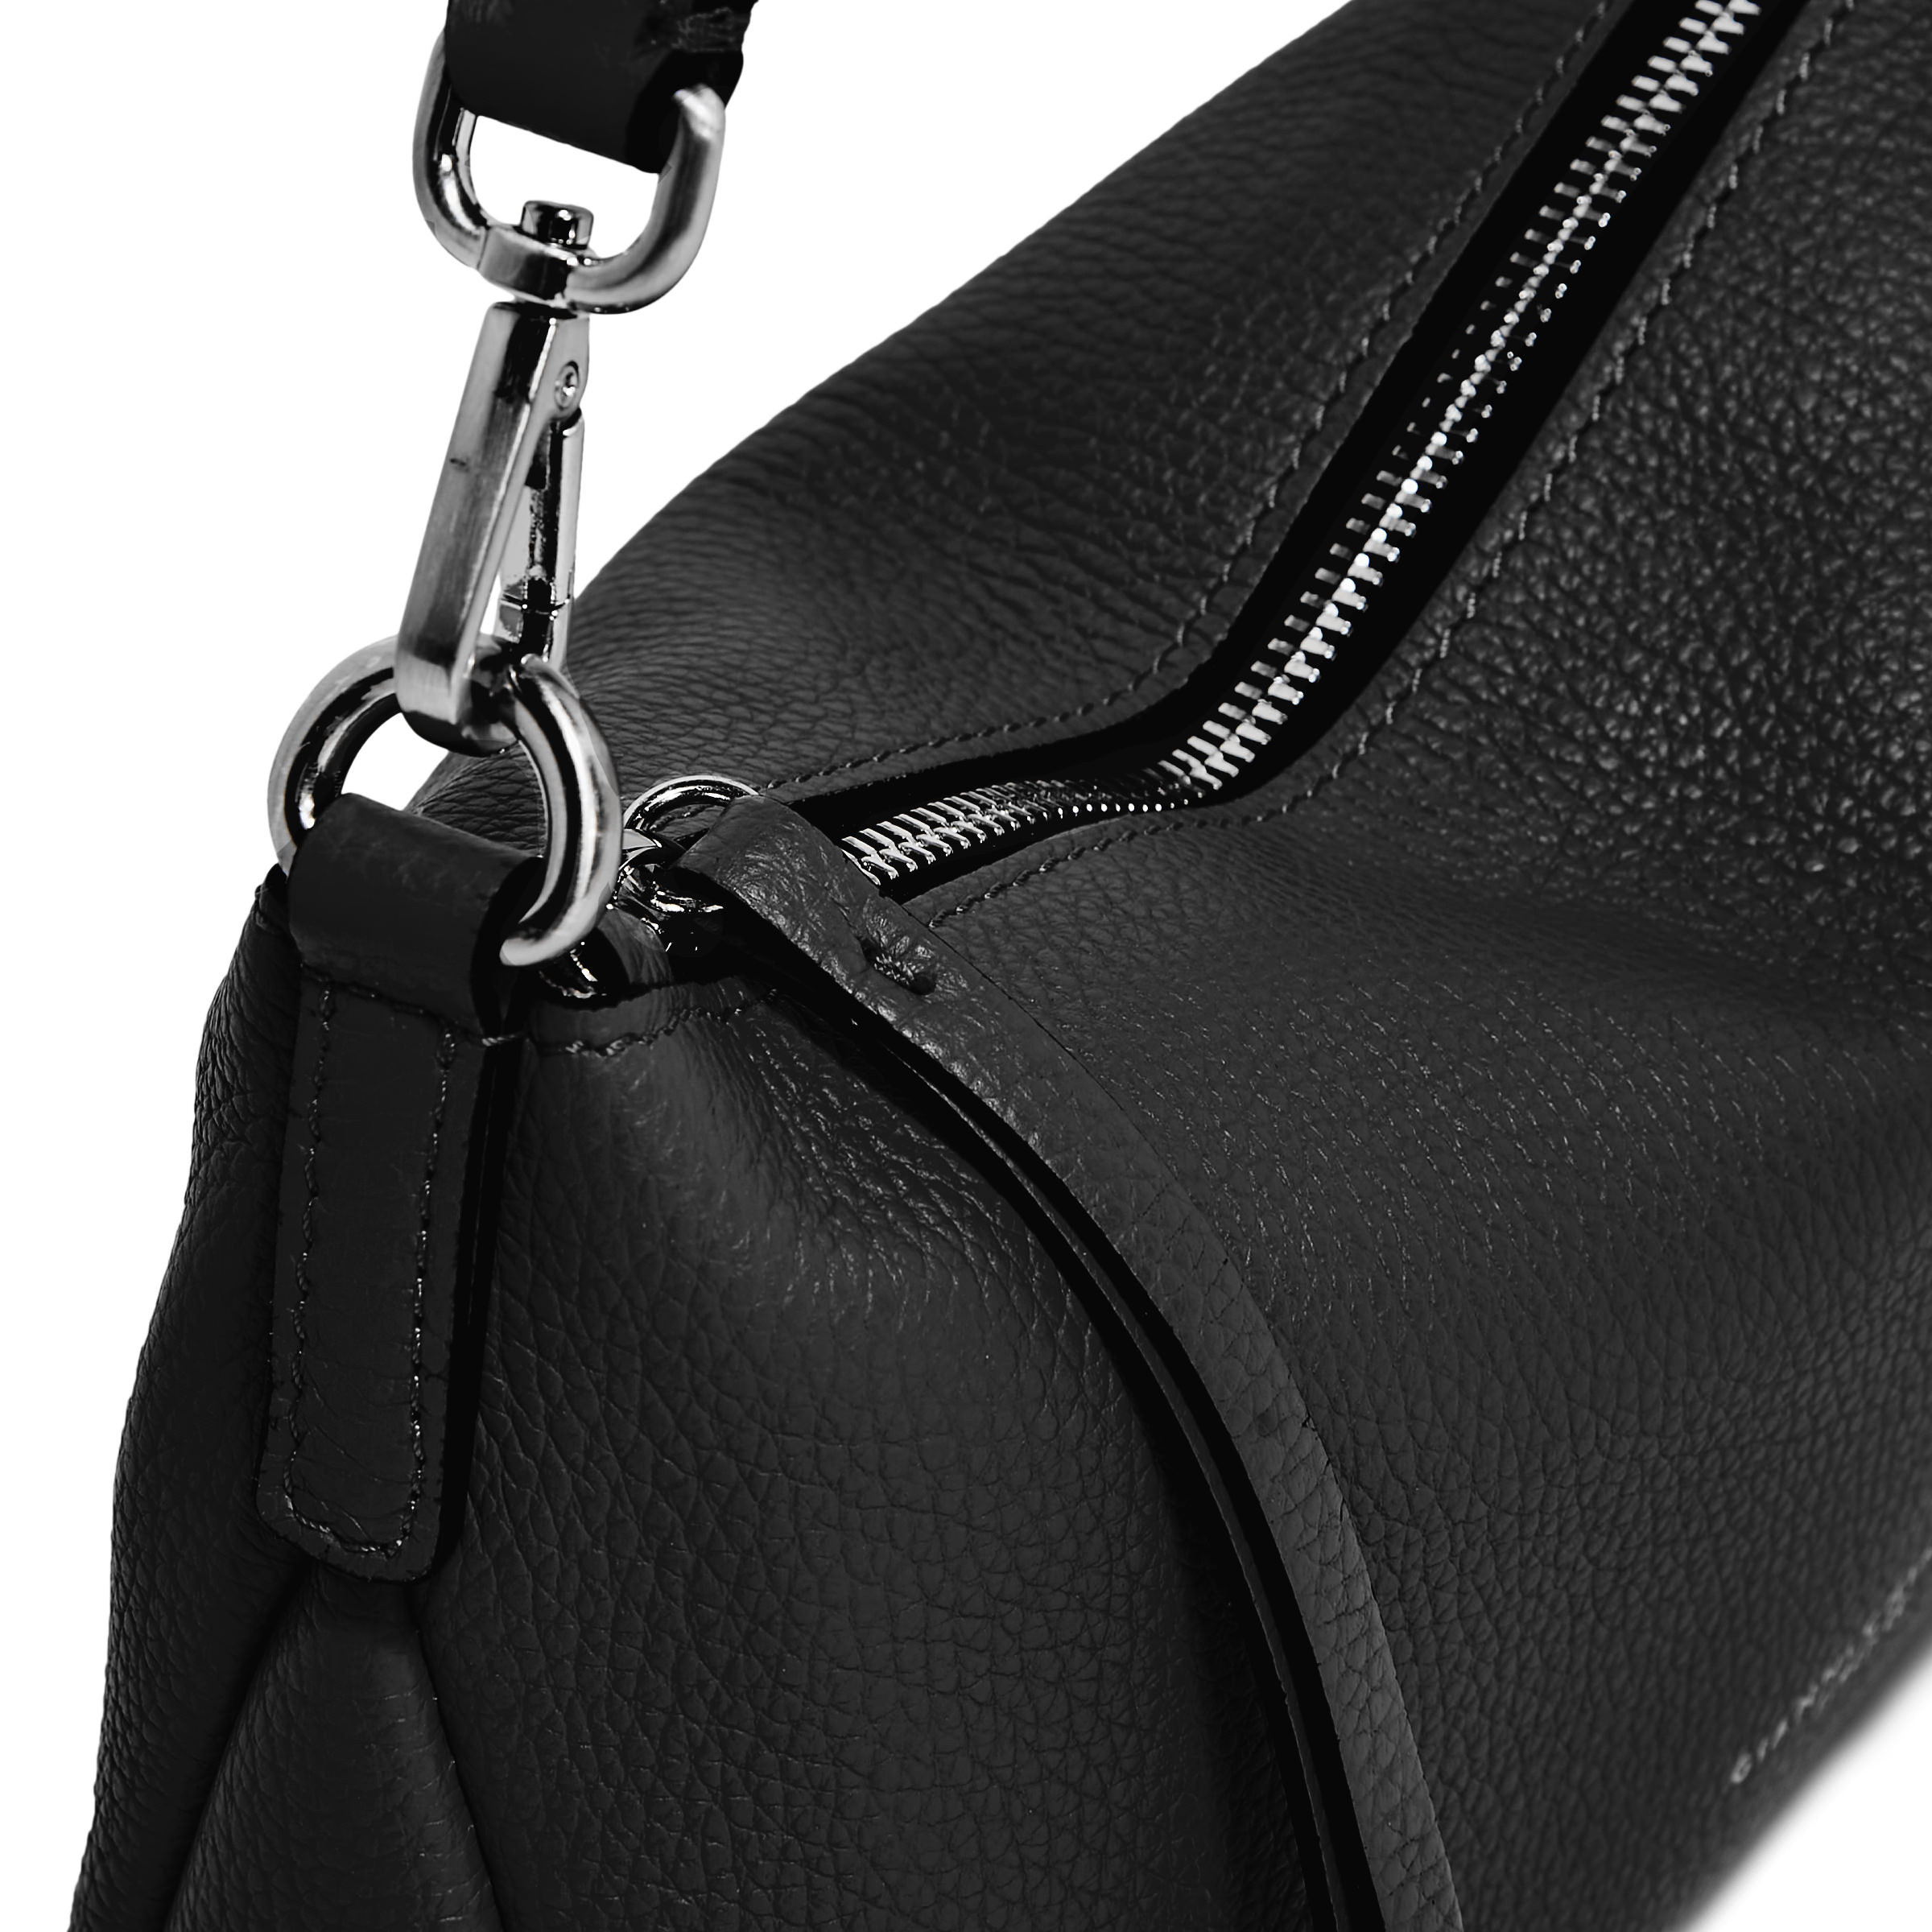 Gianni Chiarini - Nadia Leather bag, Black, large image number 4